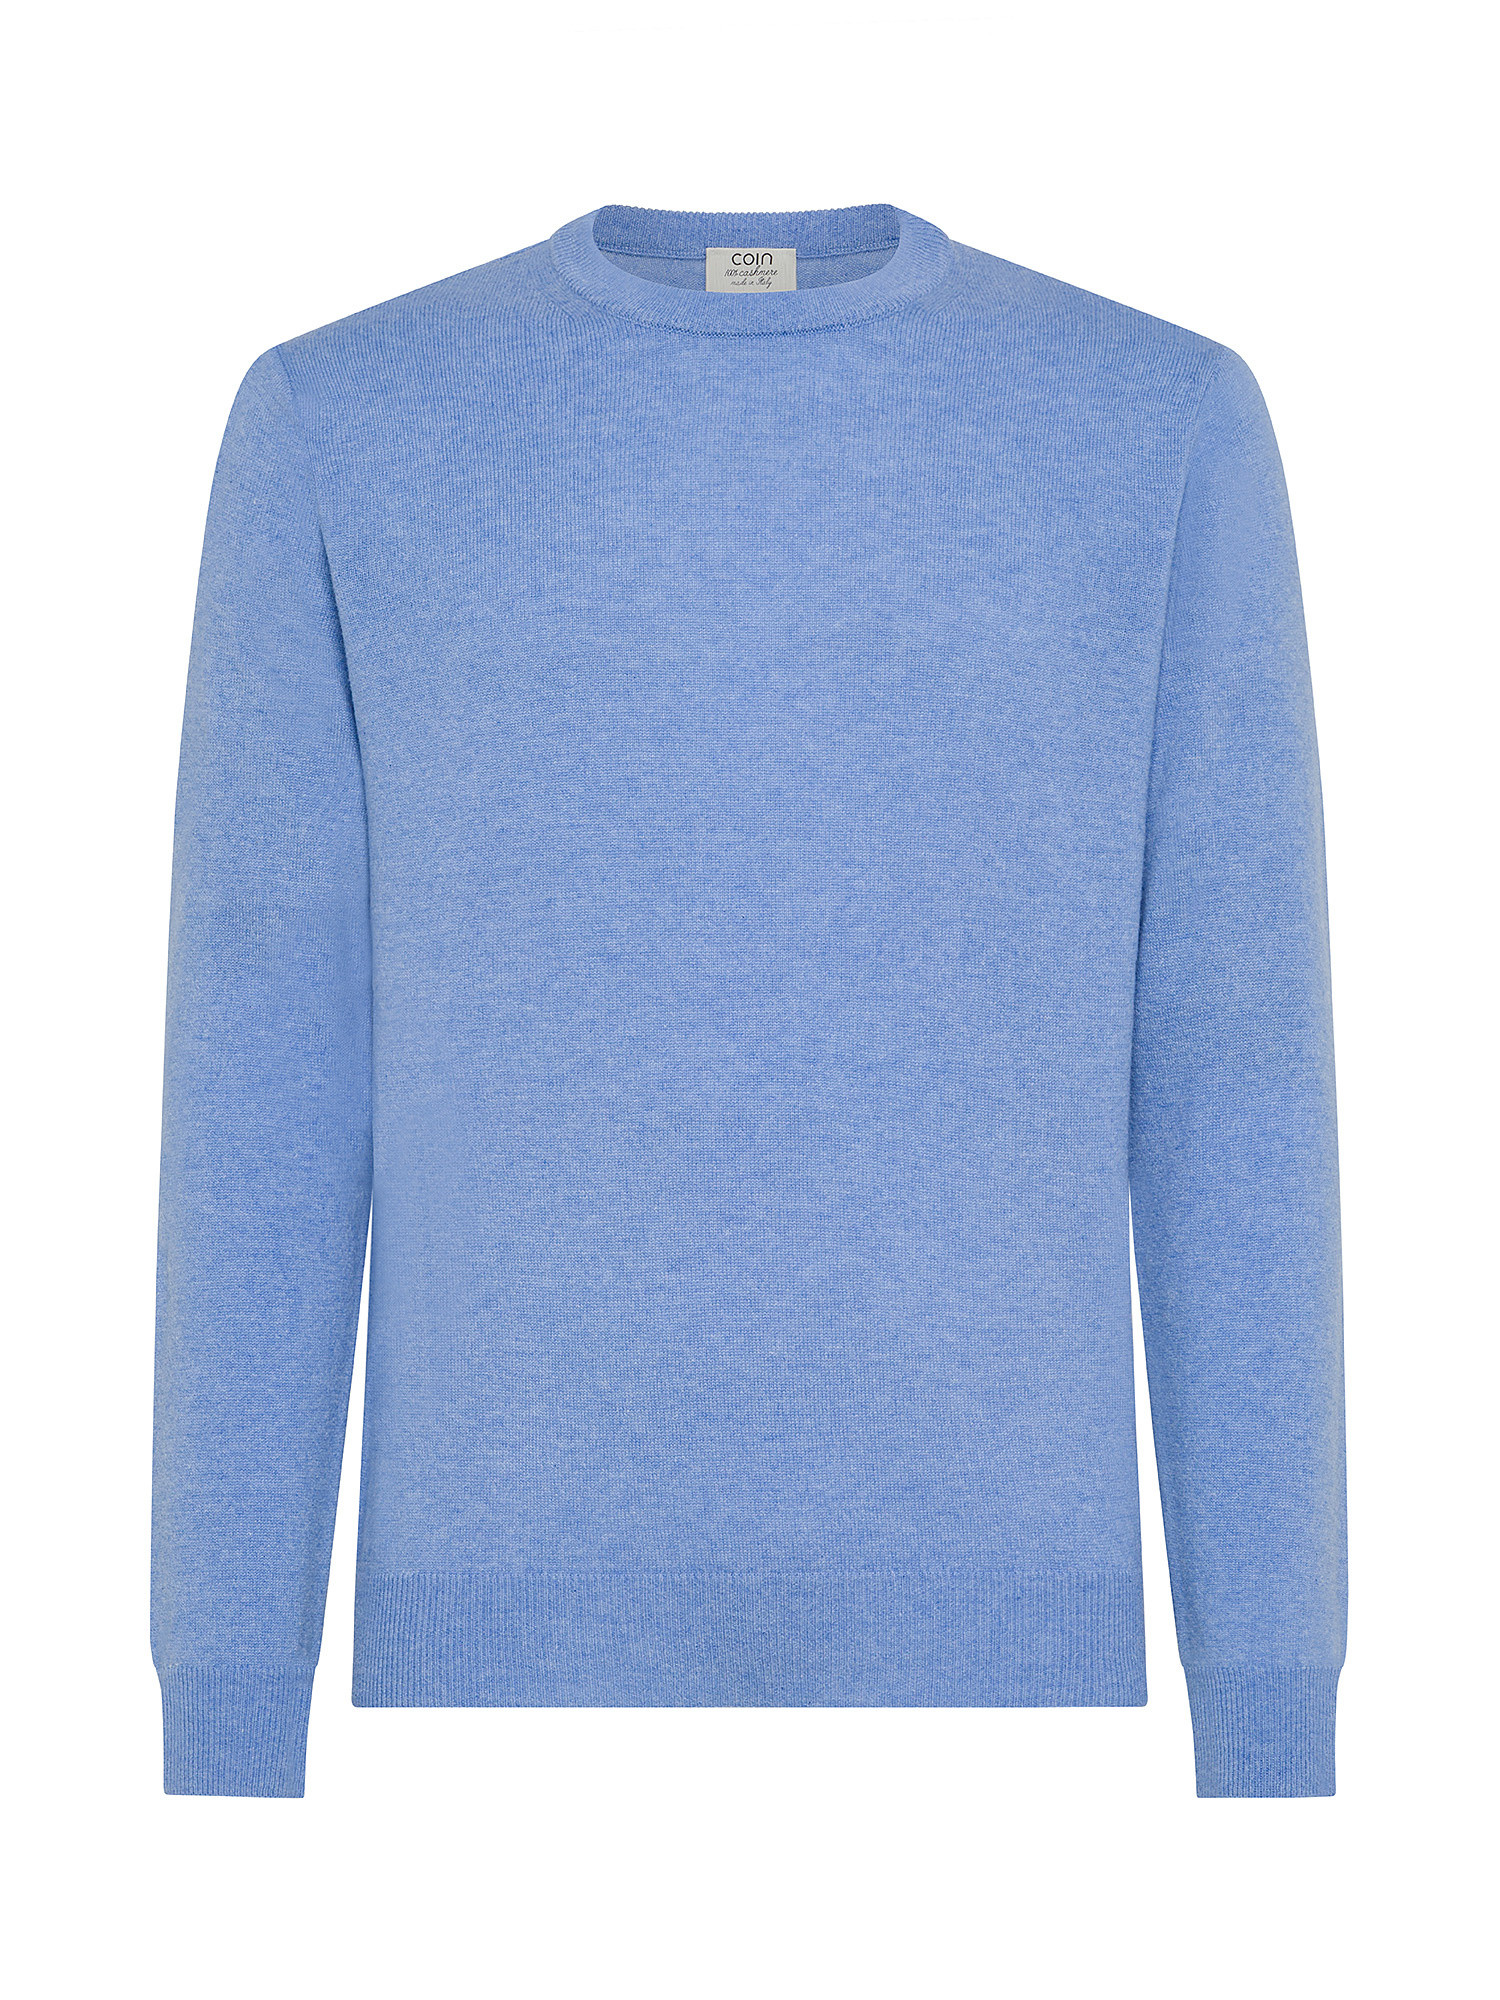 Coin Cashmere свитер с круглым вырезом из чистого кашемира., бледно-голубой северная индия